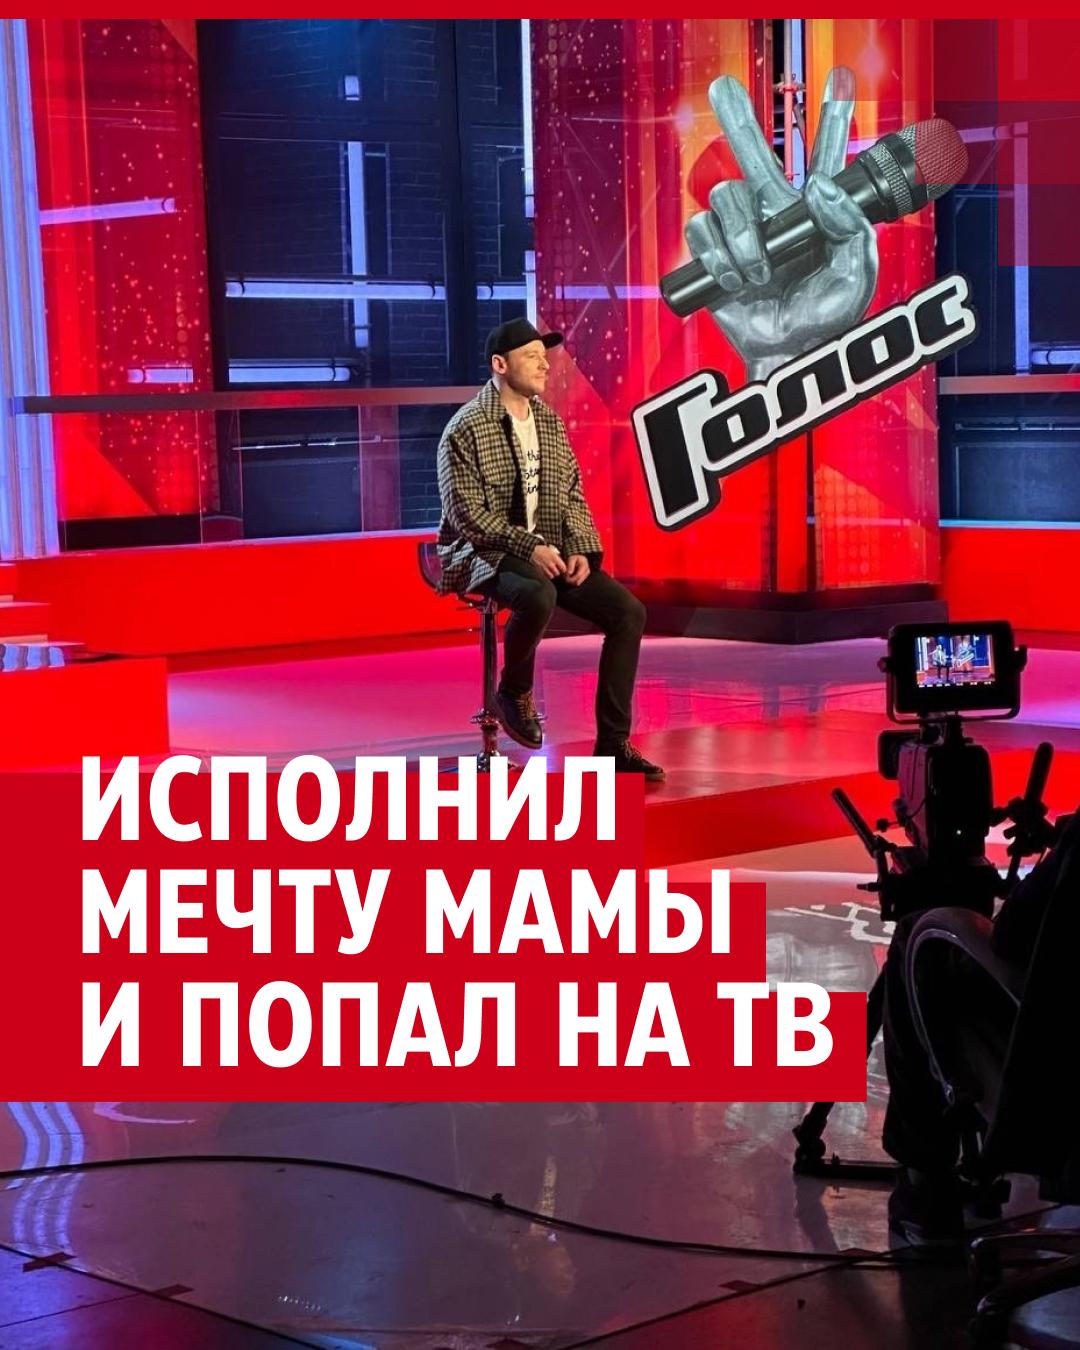 Бомжи голосуют | Первый ярославский телеканал